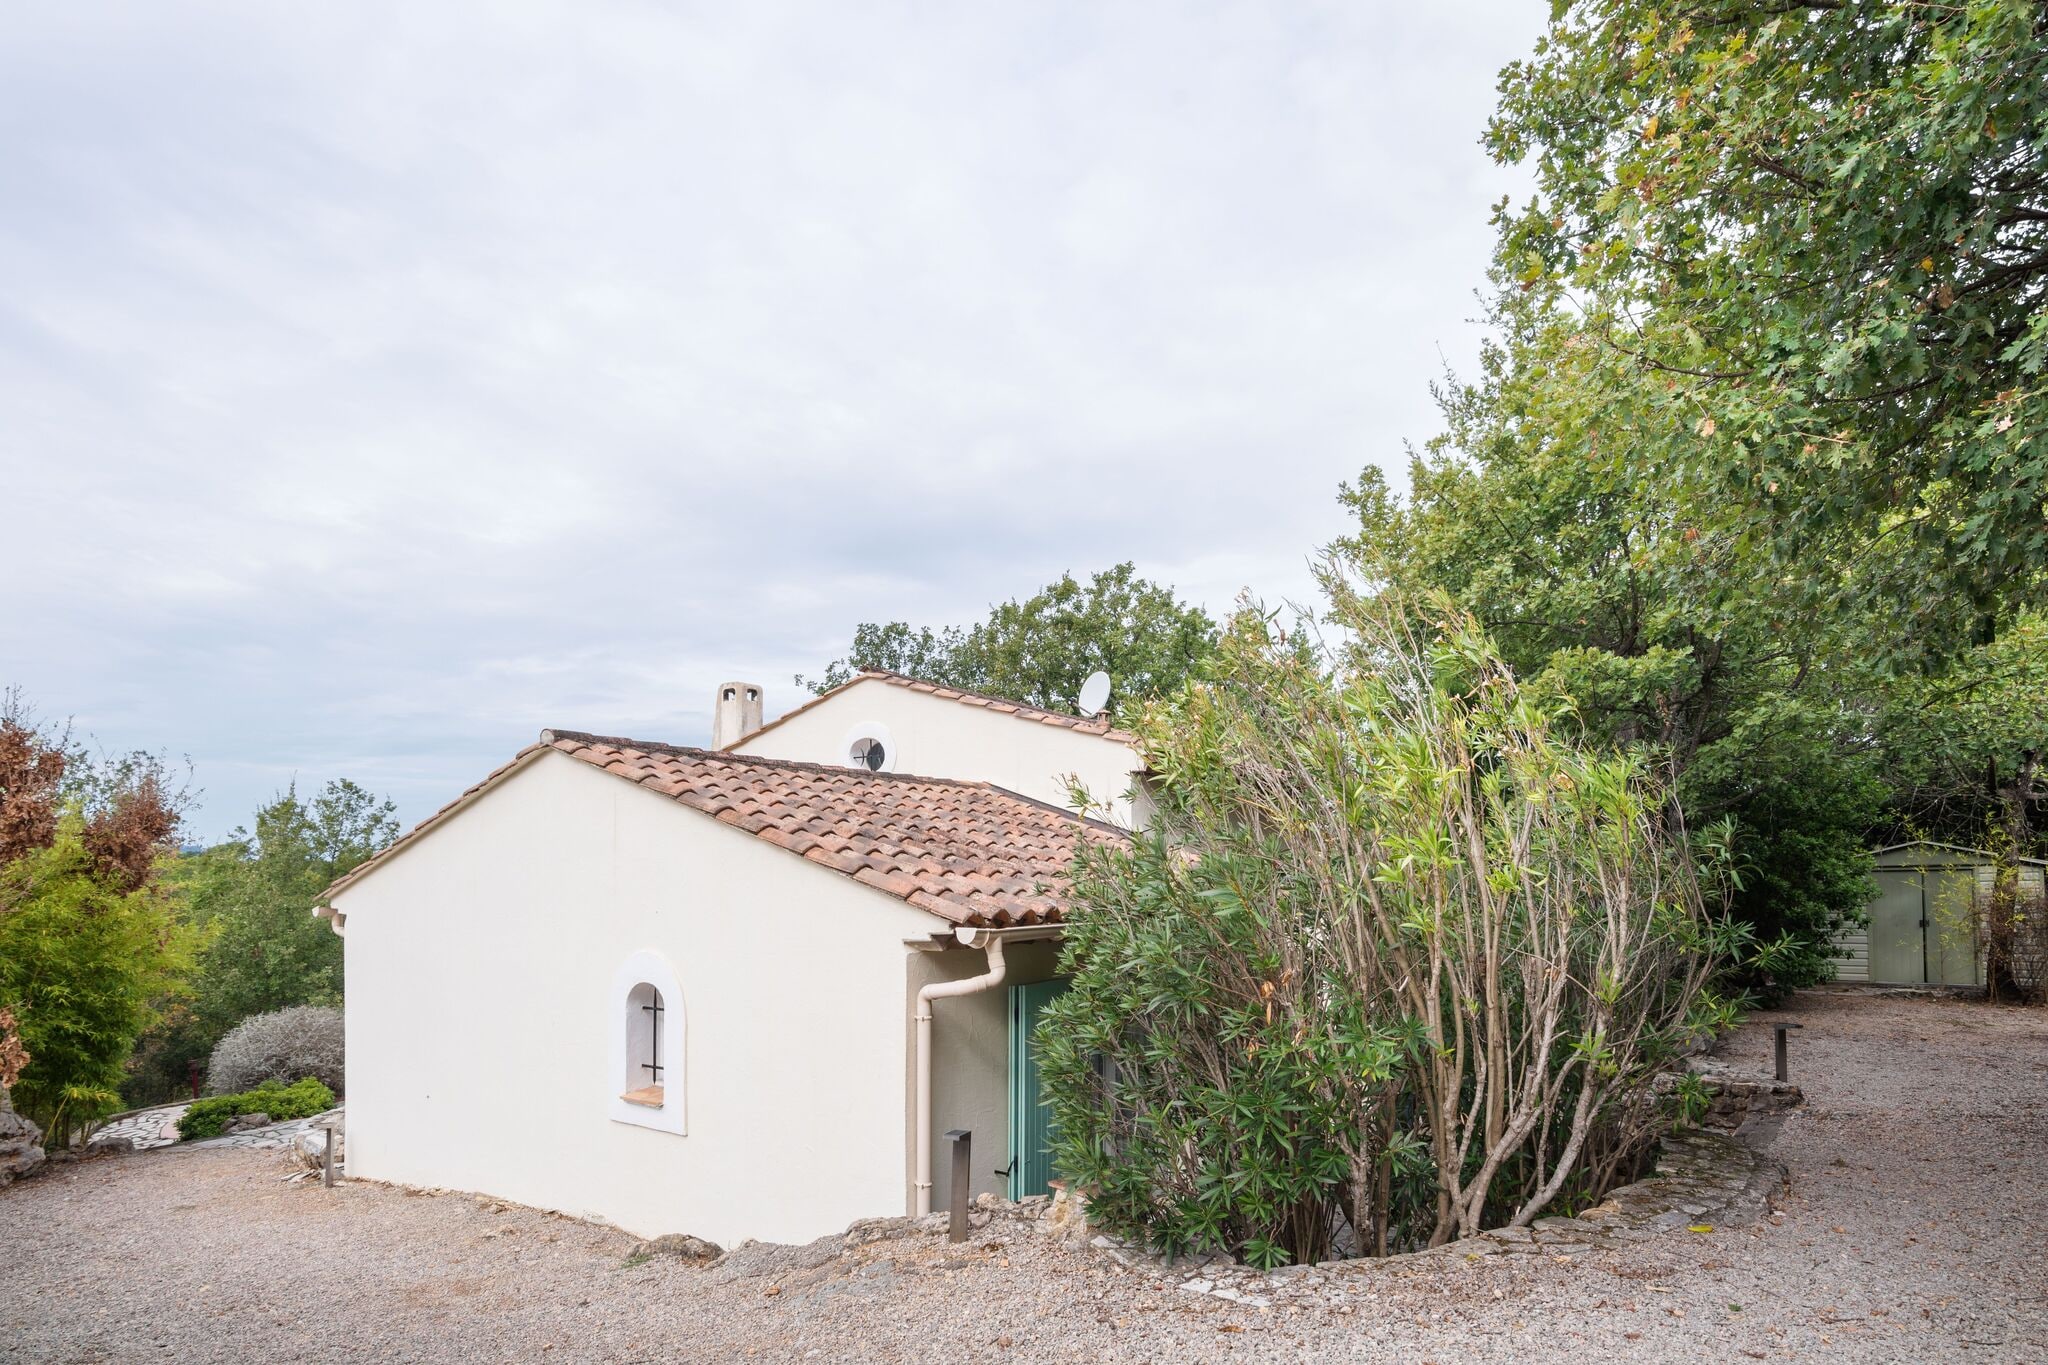 Mooie villa met airco en rustige ligging bij pittoreske dorpjes van de Provence.